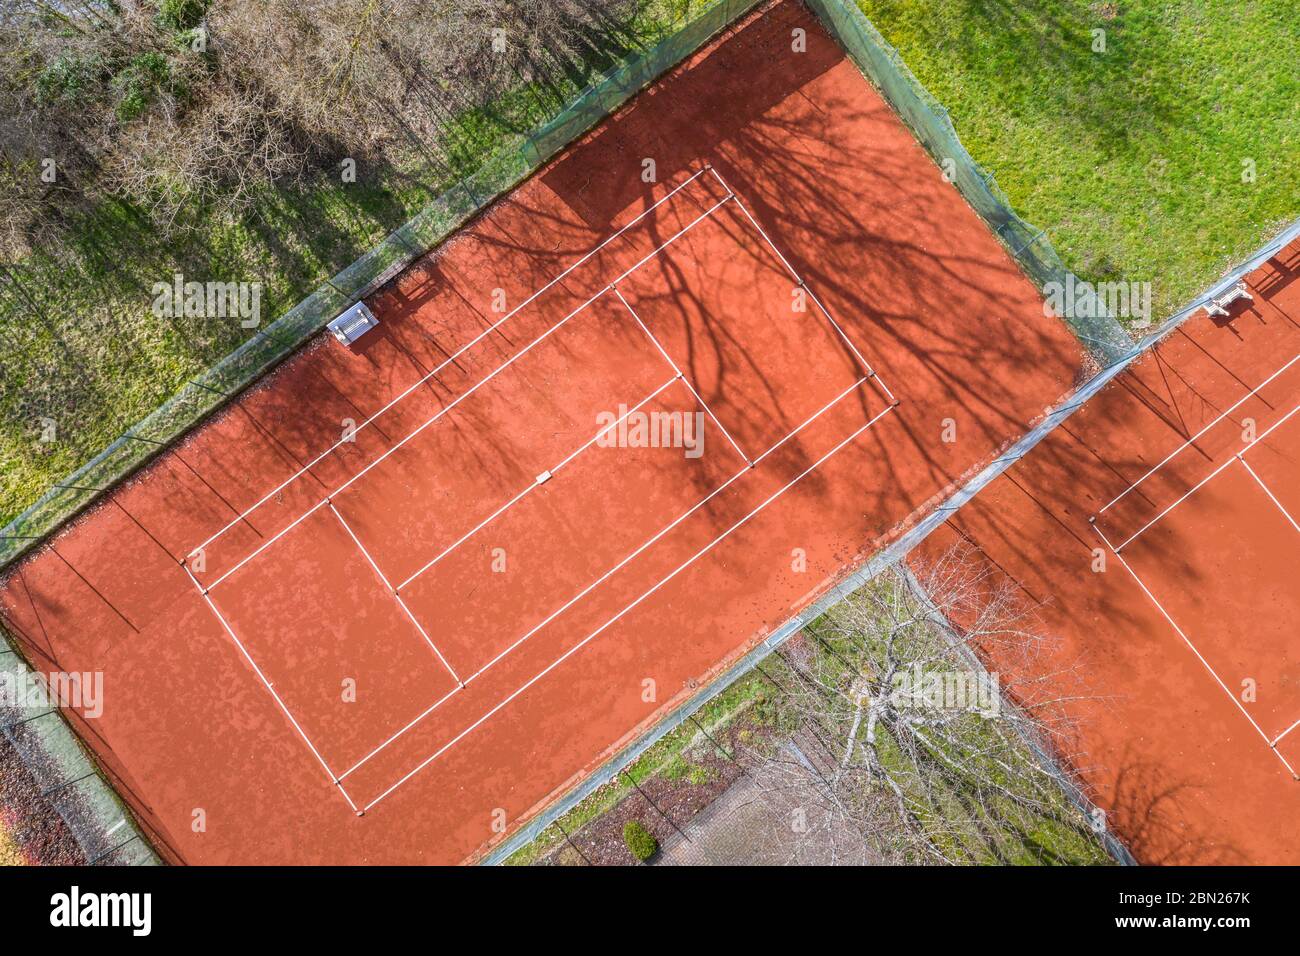 un campo da tennis dall'alto Foto Stock